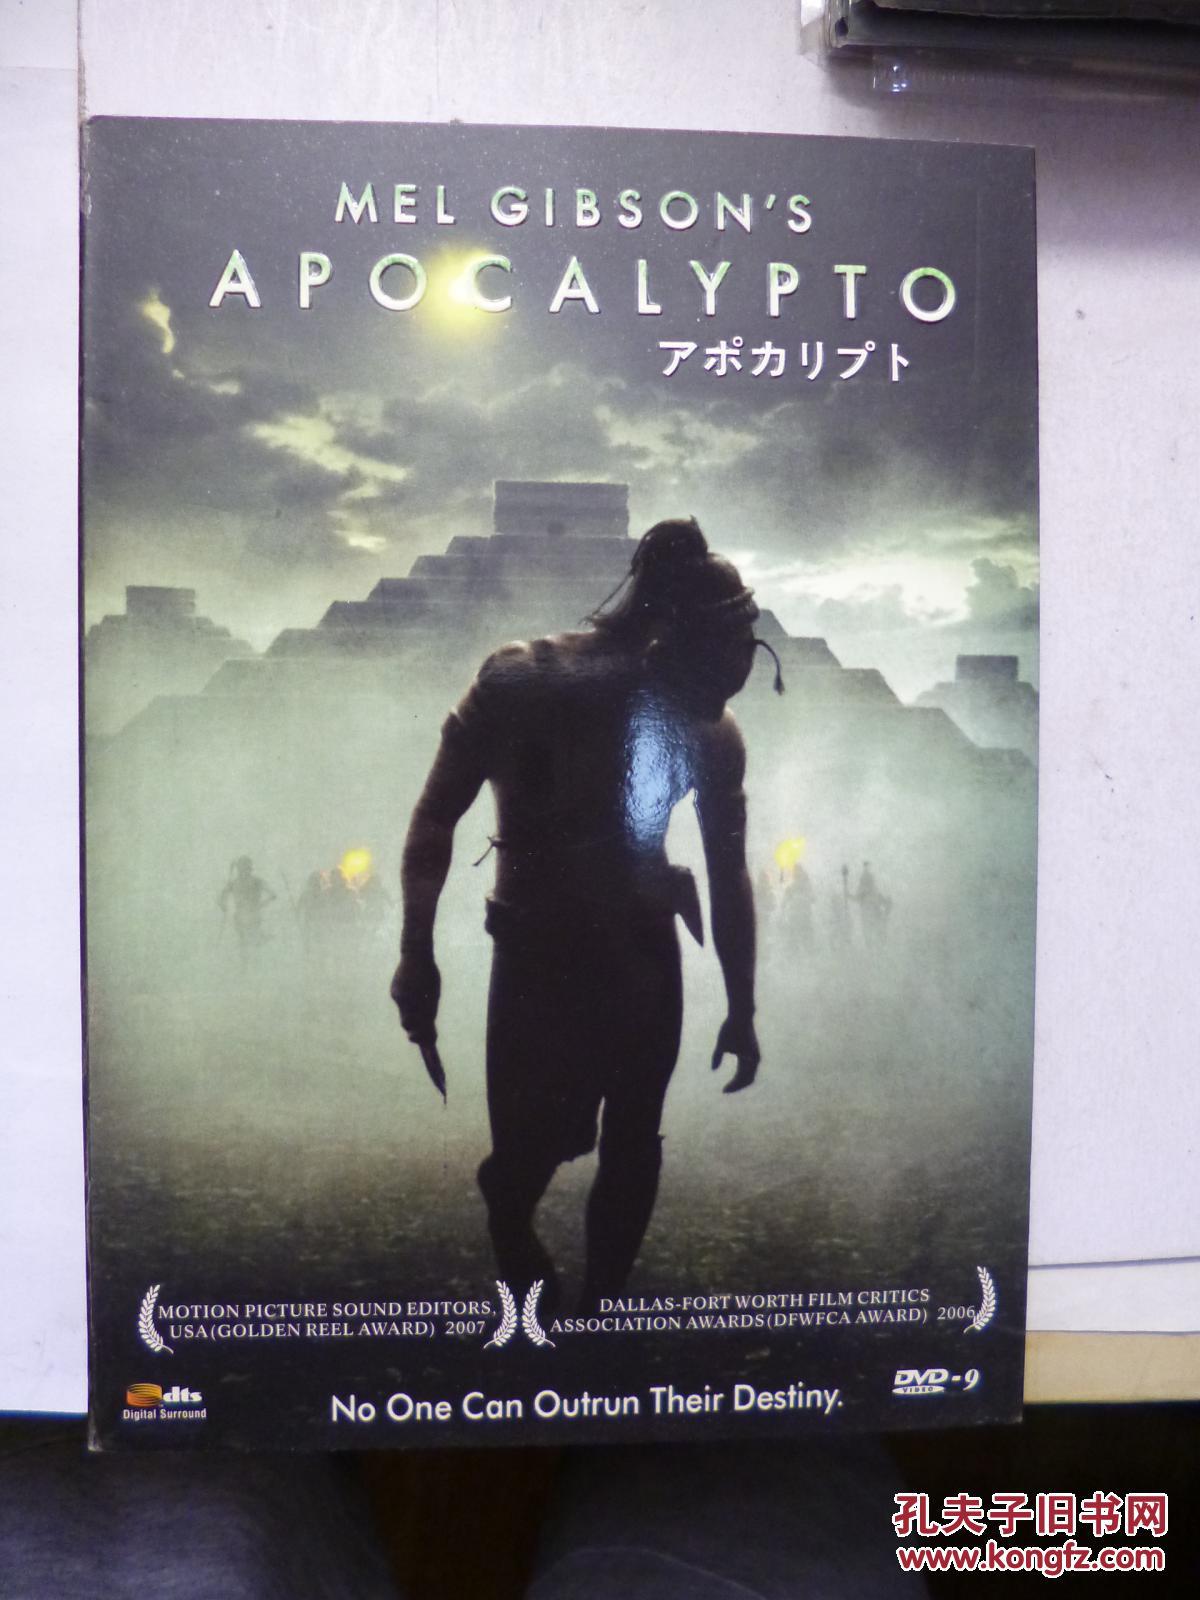 DVD 启示 Apocalypto 又名: 启示录 \/ 阿波卡猎